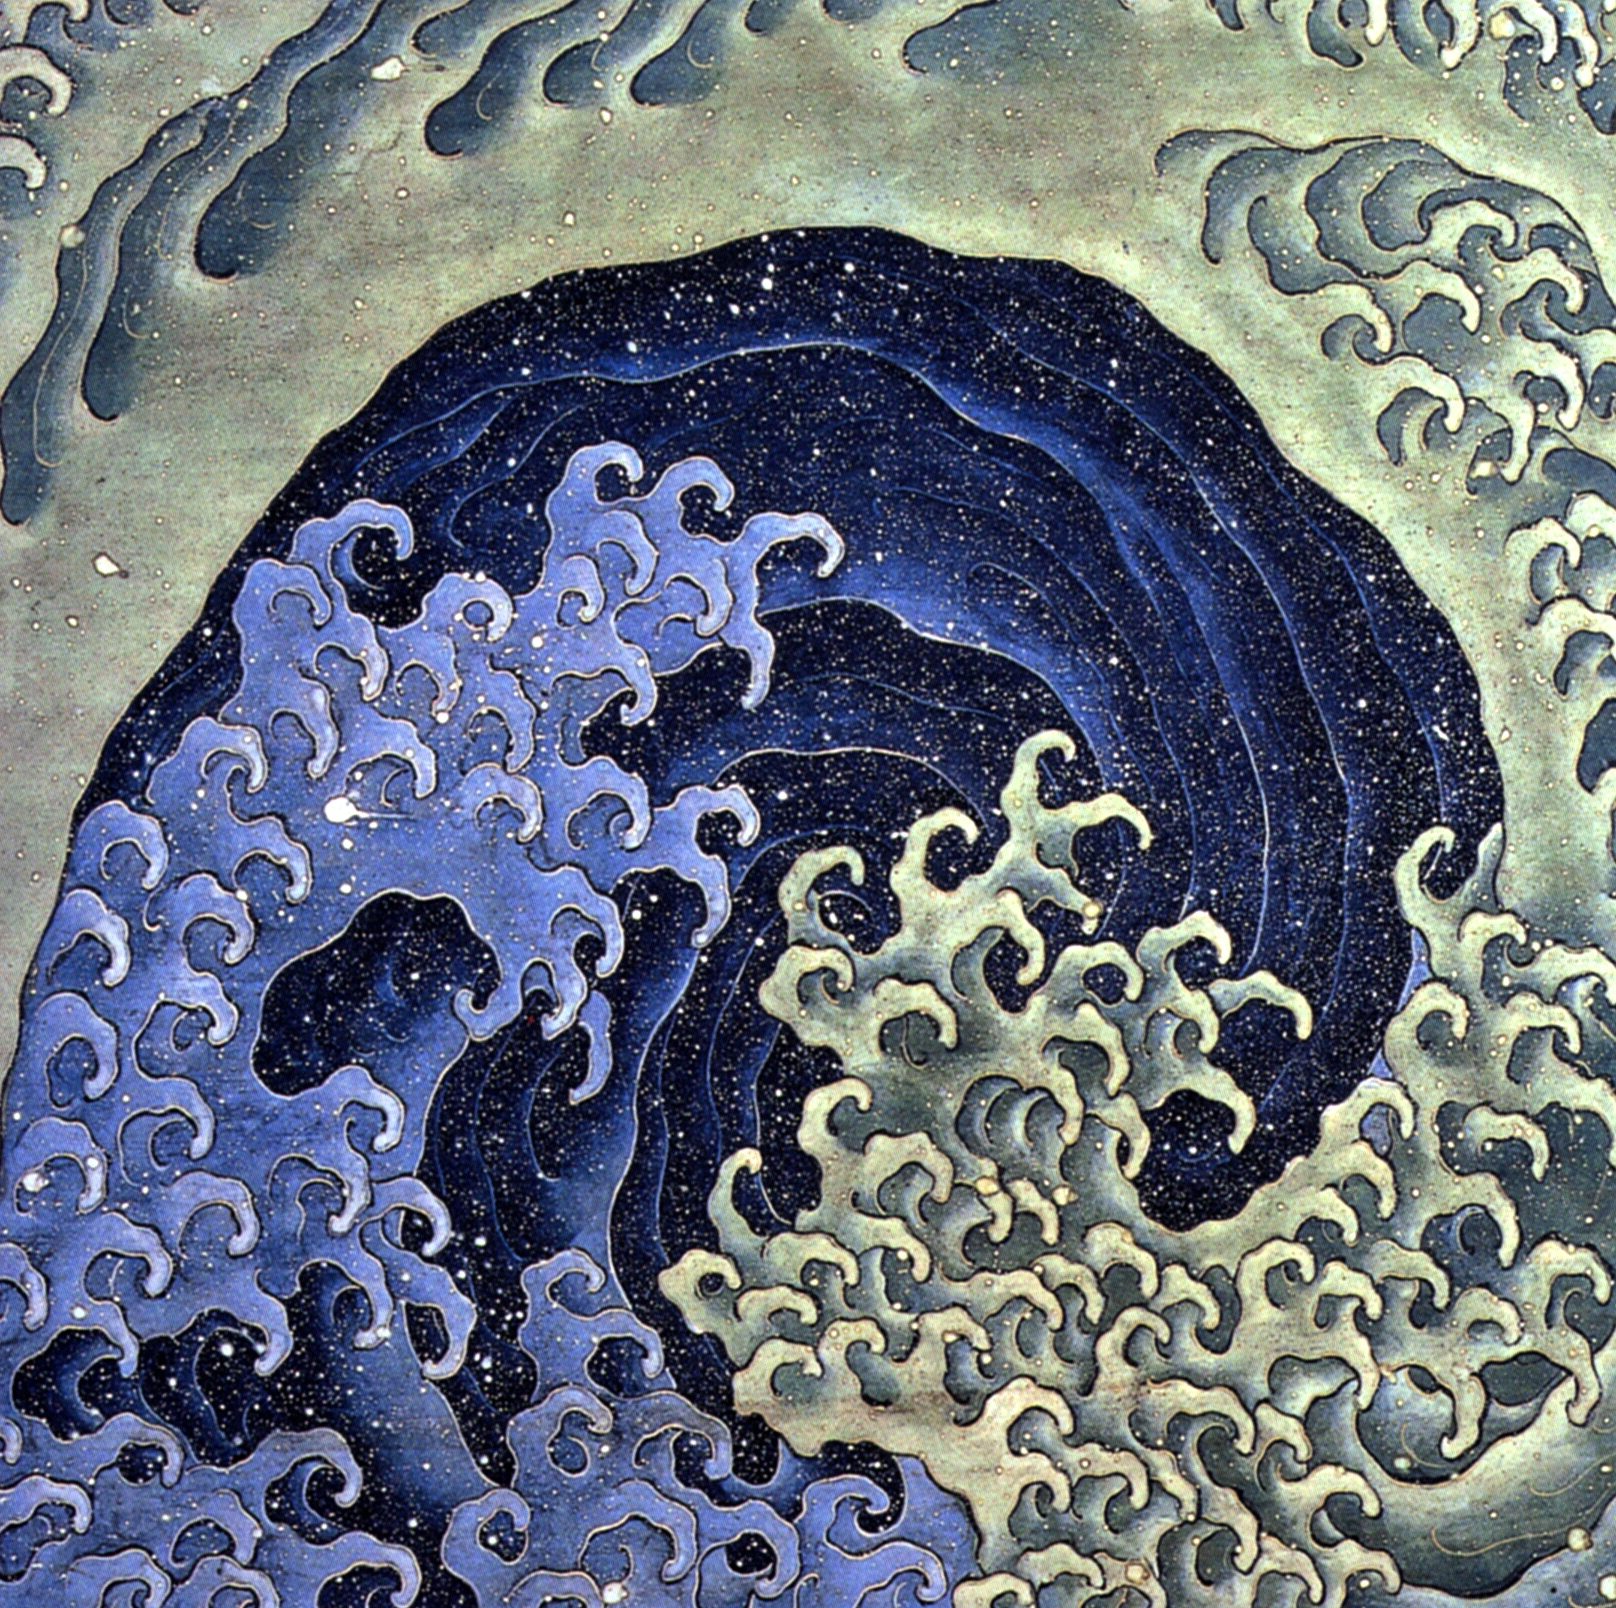 Val feminin by Katsushika Hokusai - 1845 - 118 × 118.5 cm 